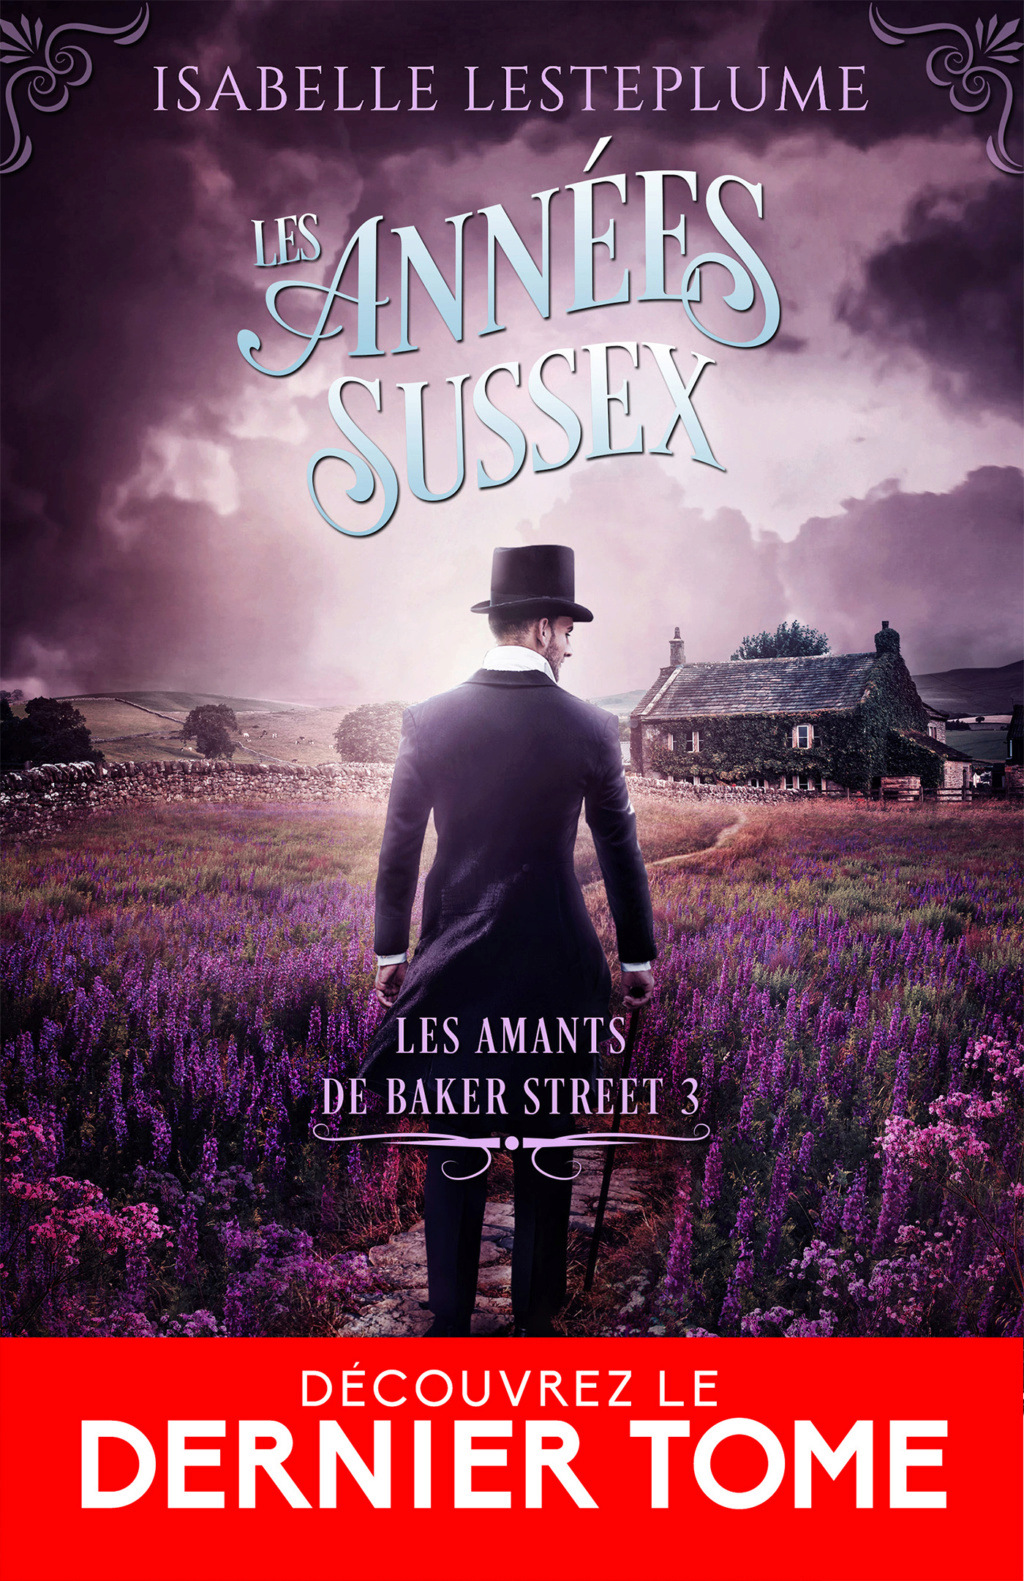 Les amants de Baker Street  - Tome 3 : Les années Sussex de Isabelle Lesteplume  8eac7410